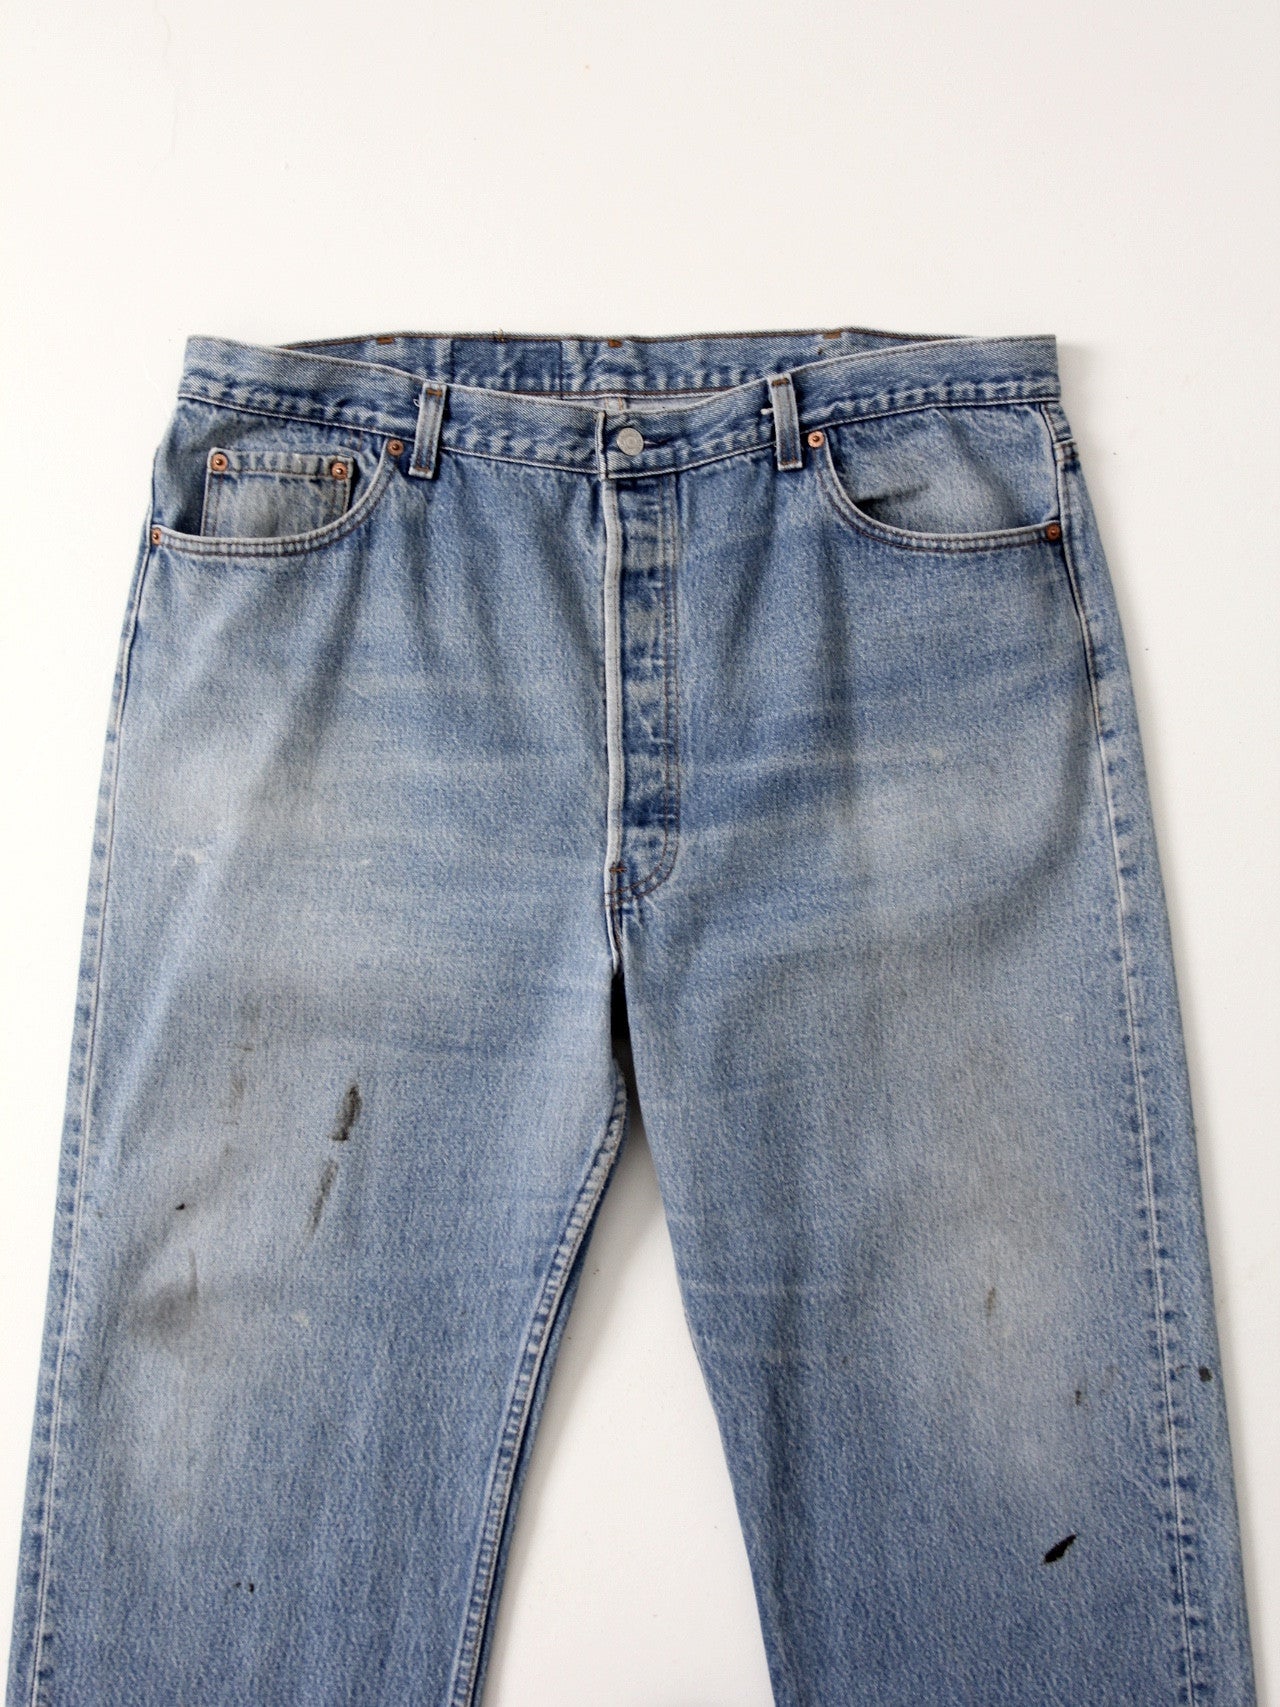 vintage Levis 501 jeans, 41 x 31